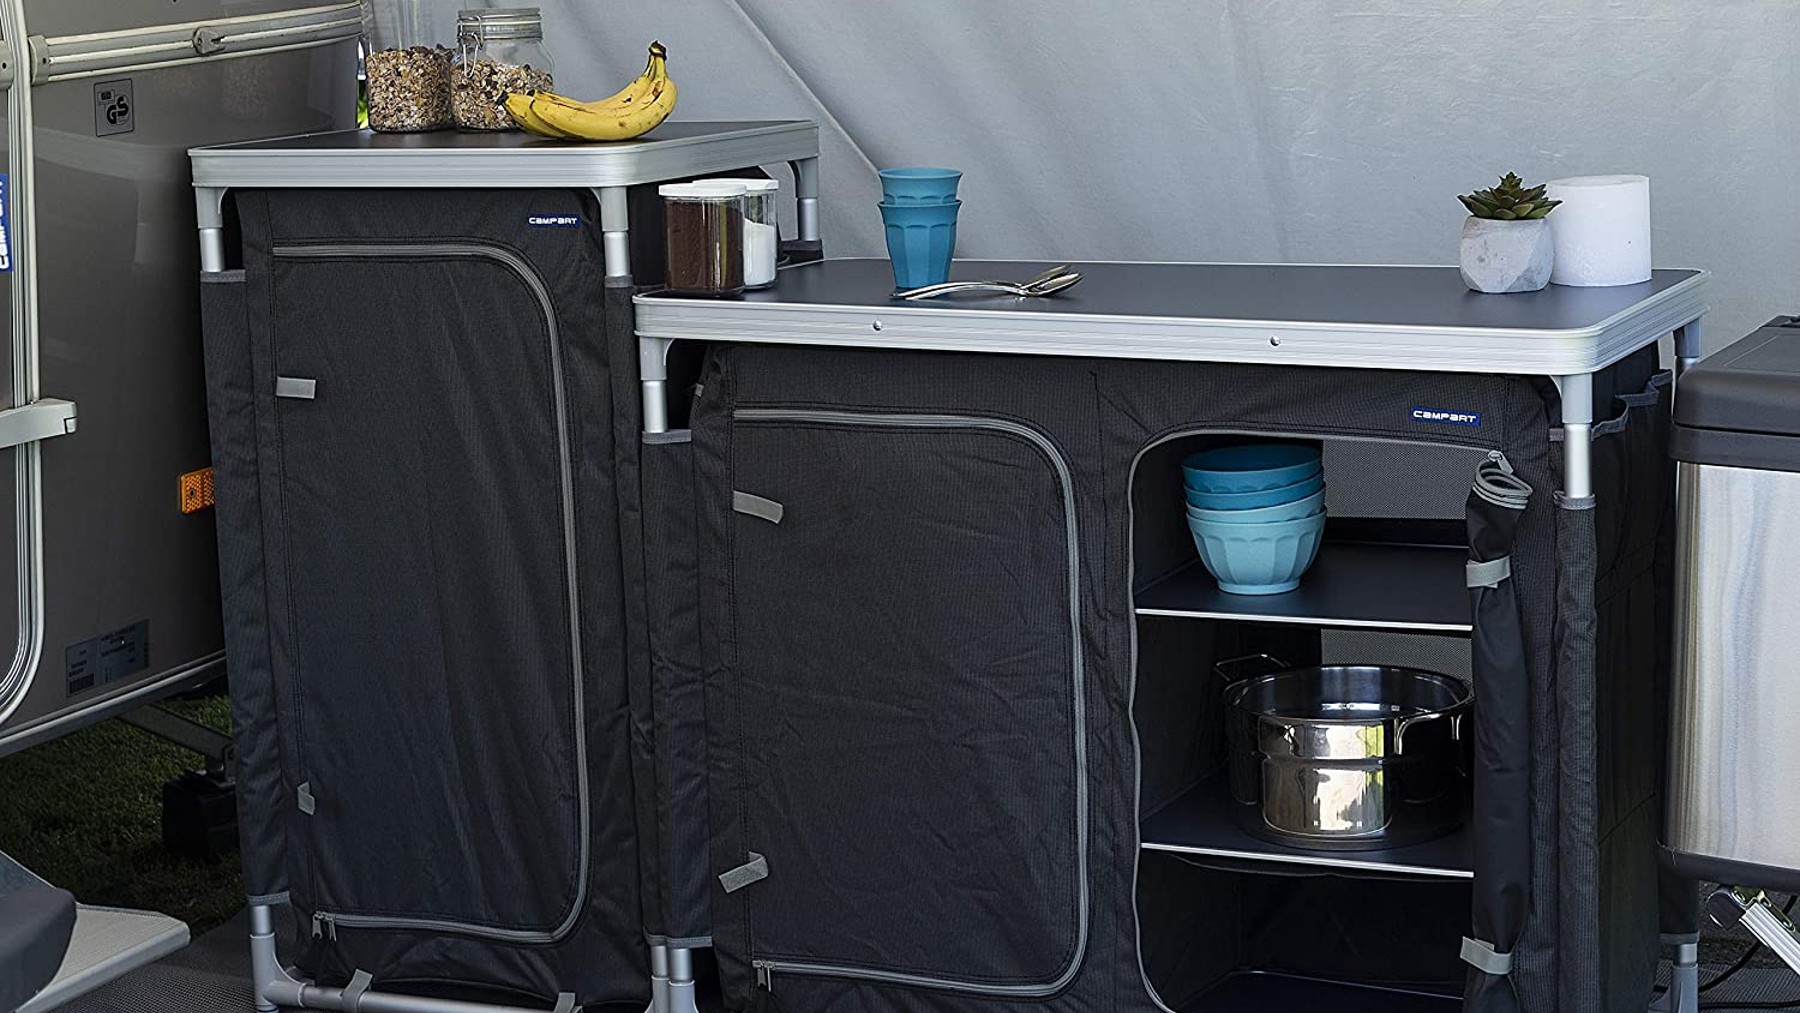 VidaCampista.com - Tienda Camping-Caravaning - Las soluciones más prácticas  al mejor precio, mueble cocina Midland en aluminio con fregadero,  resistente y fácil de montar, descubre más en nuestra web